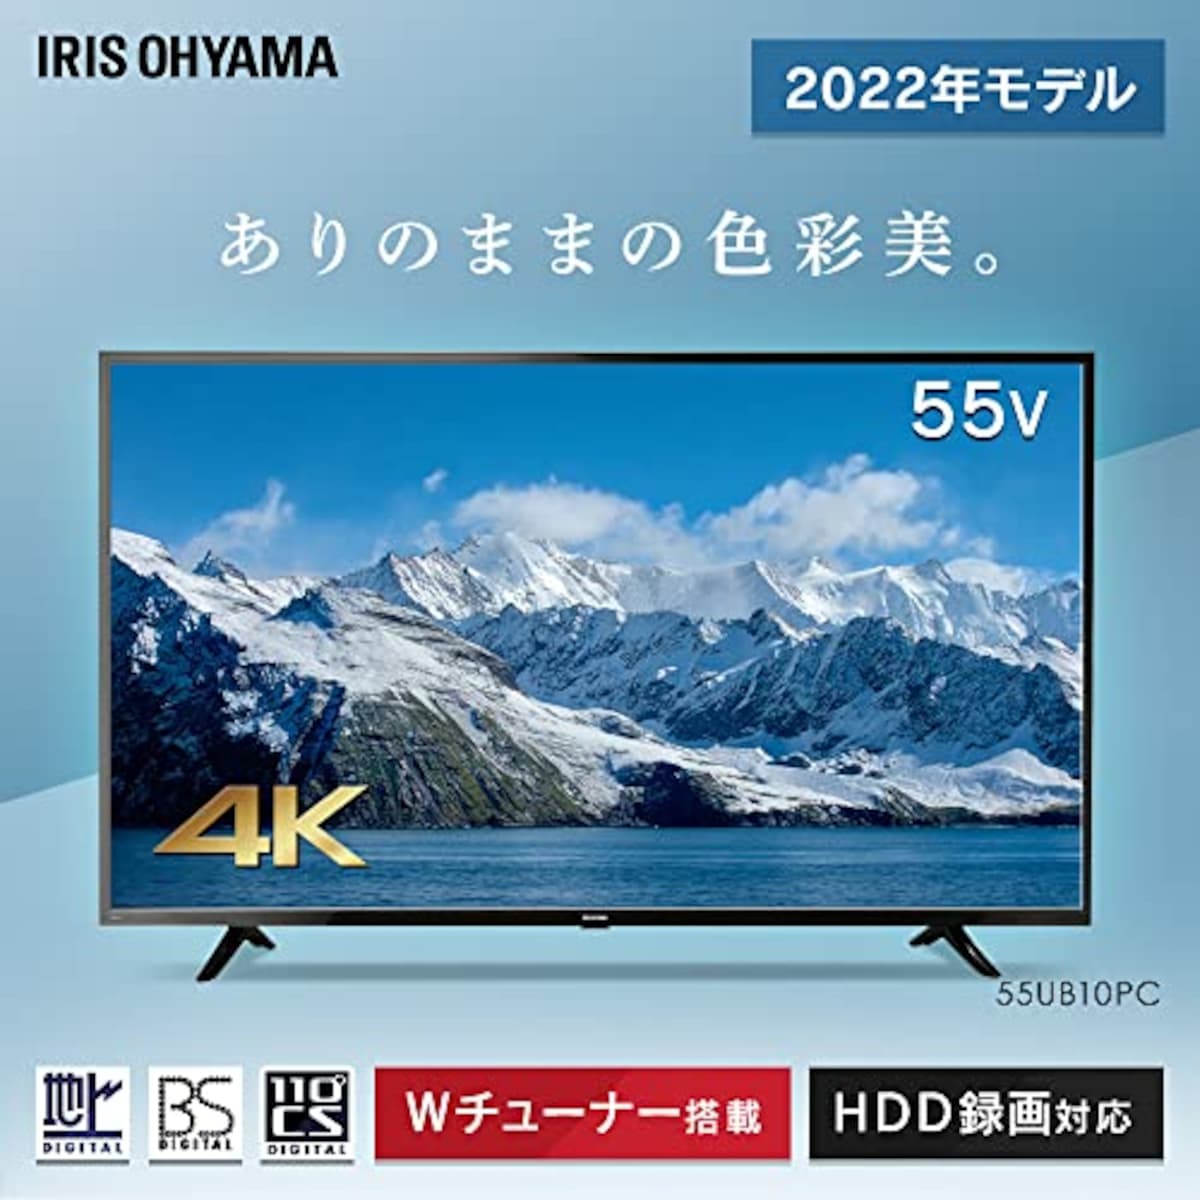  アイリスオーヤマ 55V型 4K対応 液晶 テレビ 55UB10PC 2022年モデル Wチューナー 裏番組同時録画 外付けHDD録画対応画像2 